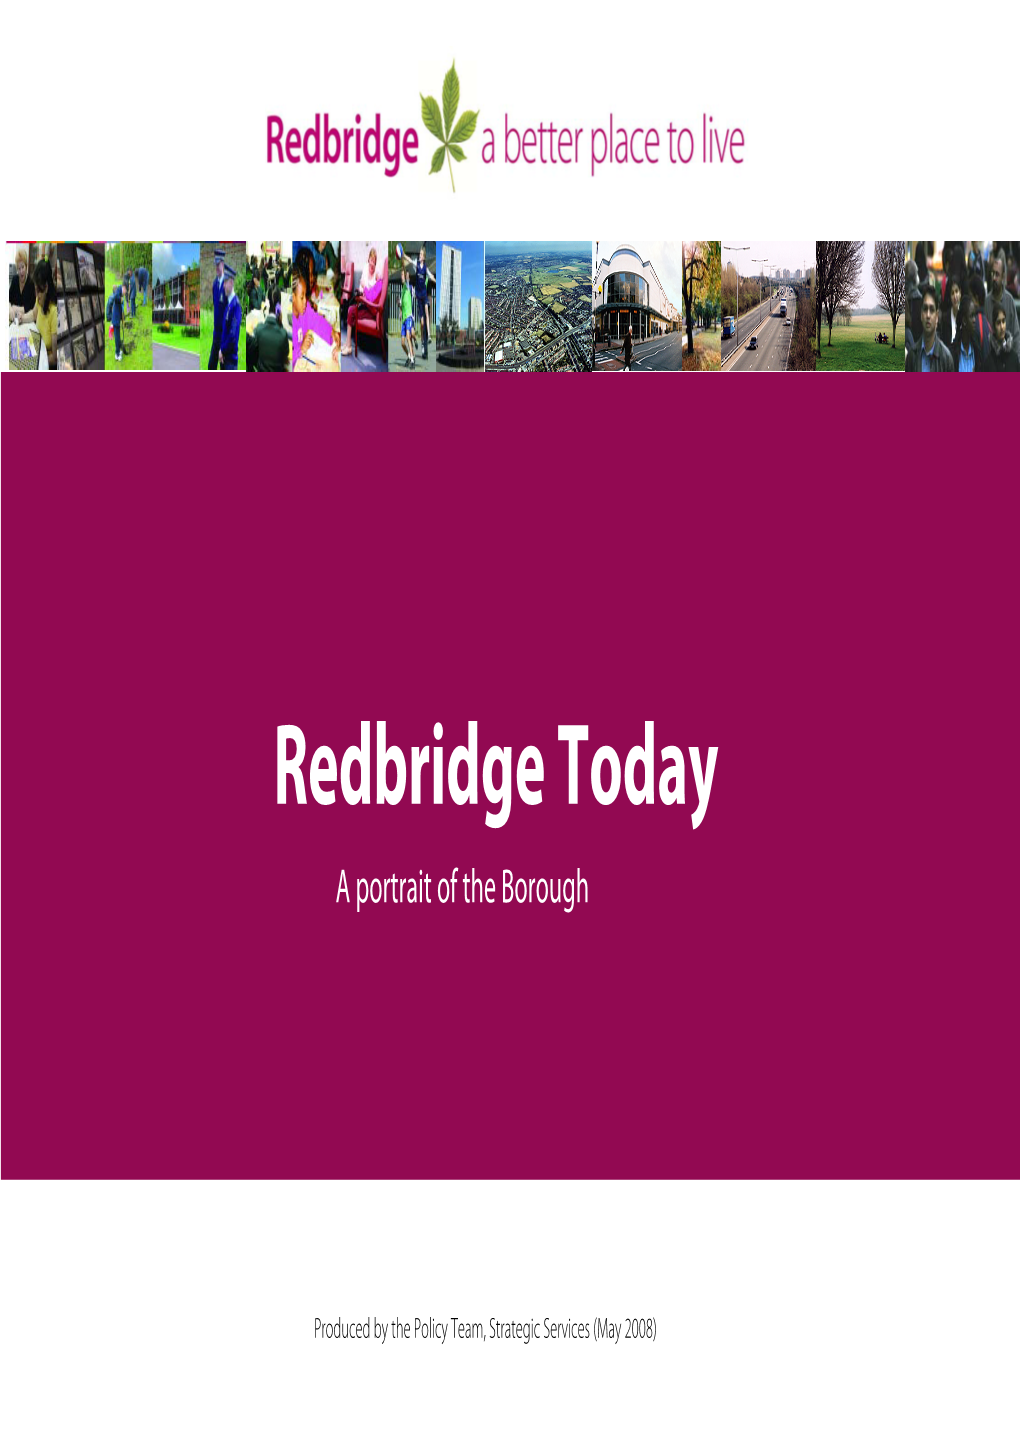 Redbridge Today a Portrait of the Borough